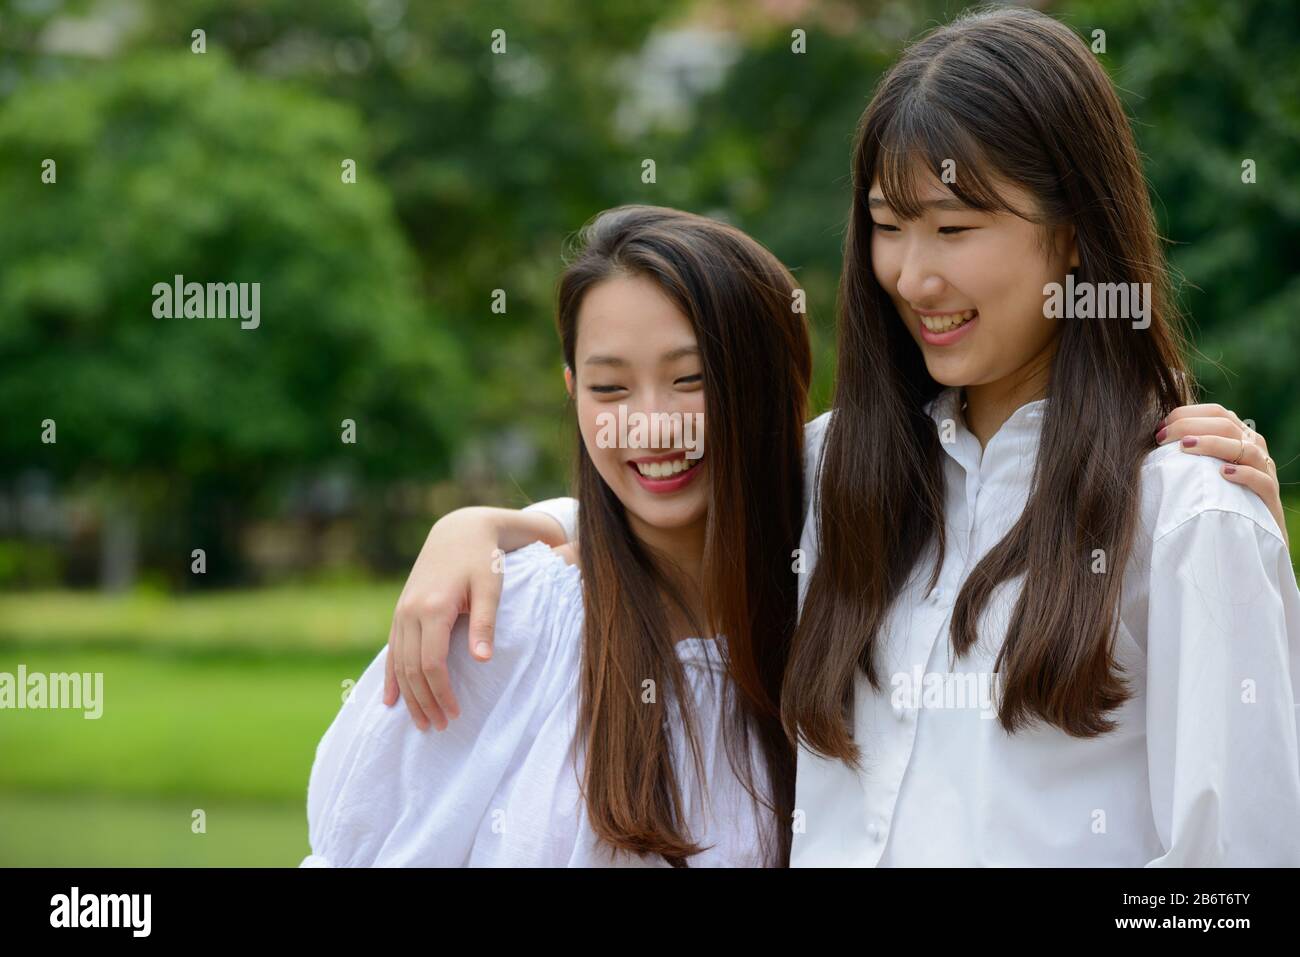 Zwei glückliche junge, schöne asiatische Teenager-Mädchen, die sich im Park vereinigen Stockfoto